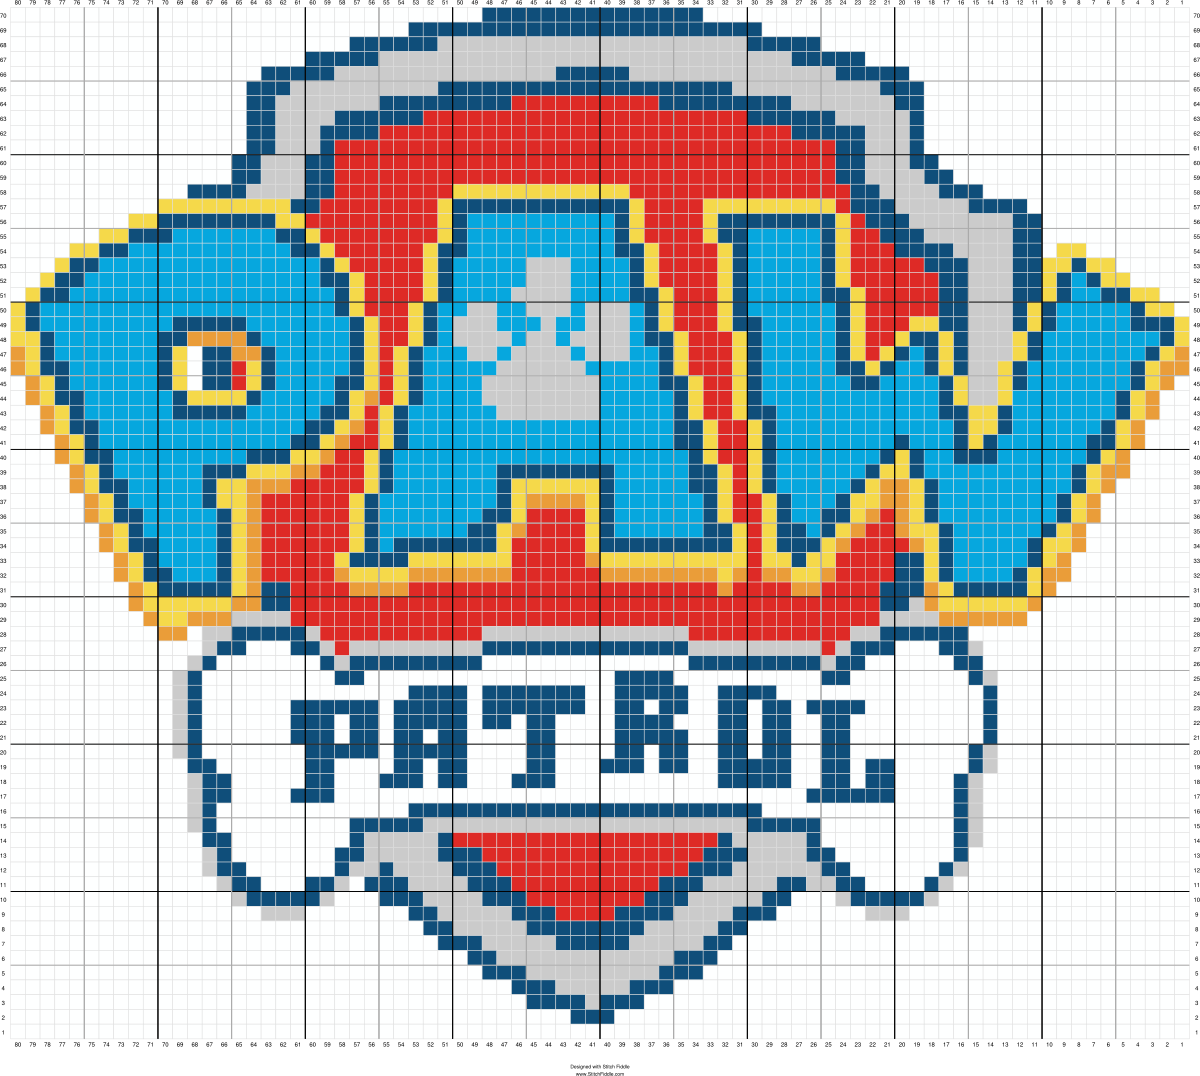 patrulha canina logo